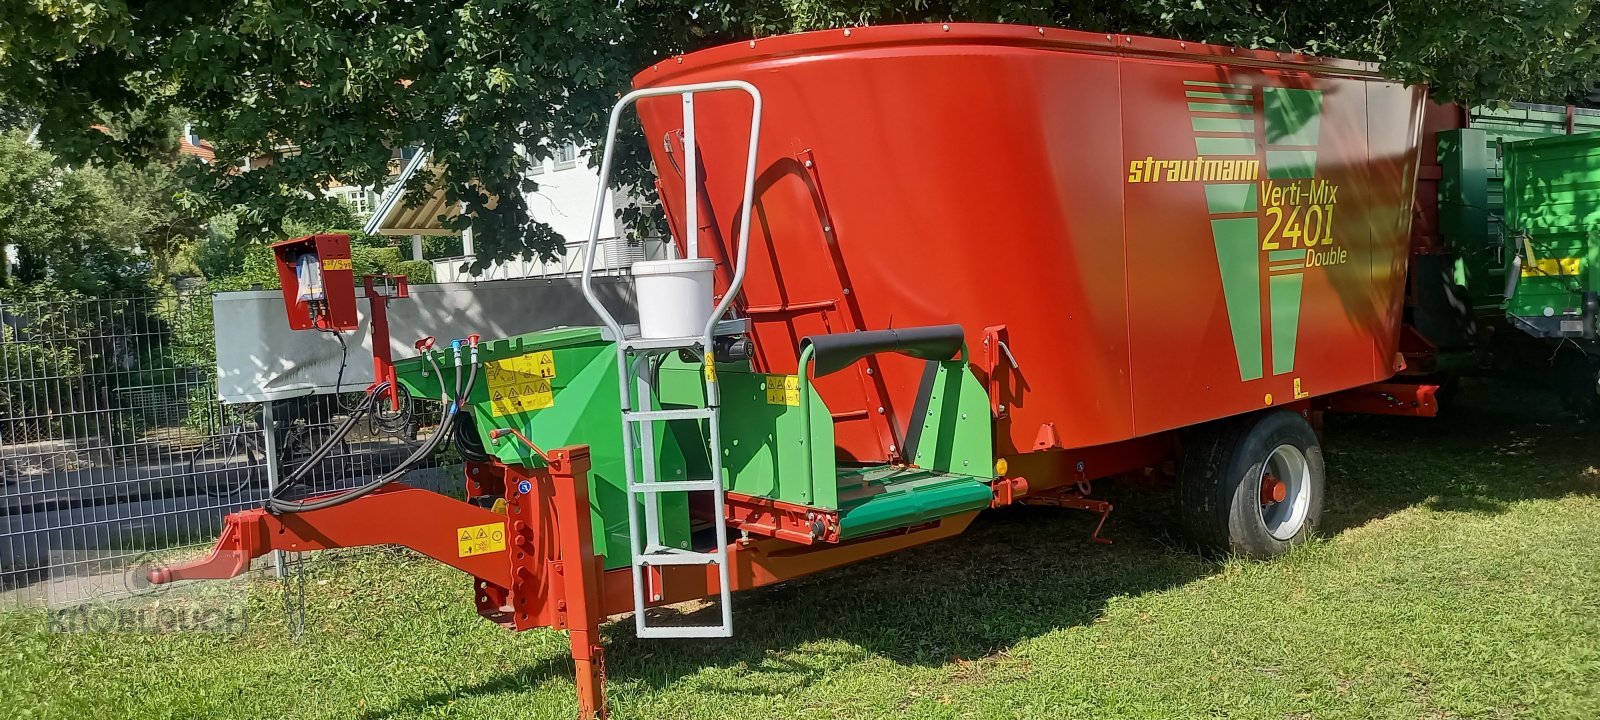 Futtermischwagen des Typs Strautmann Verti Mix 2401 Double, Neumaschine in Wangen (Bild 1)